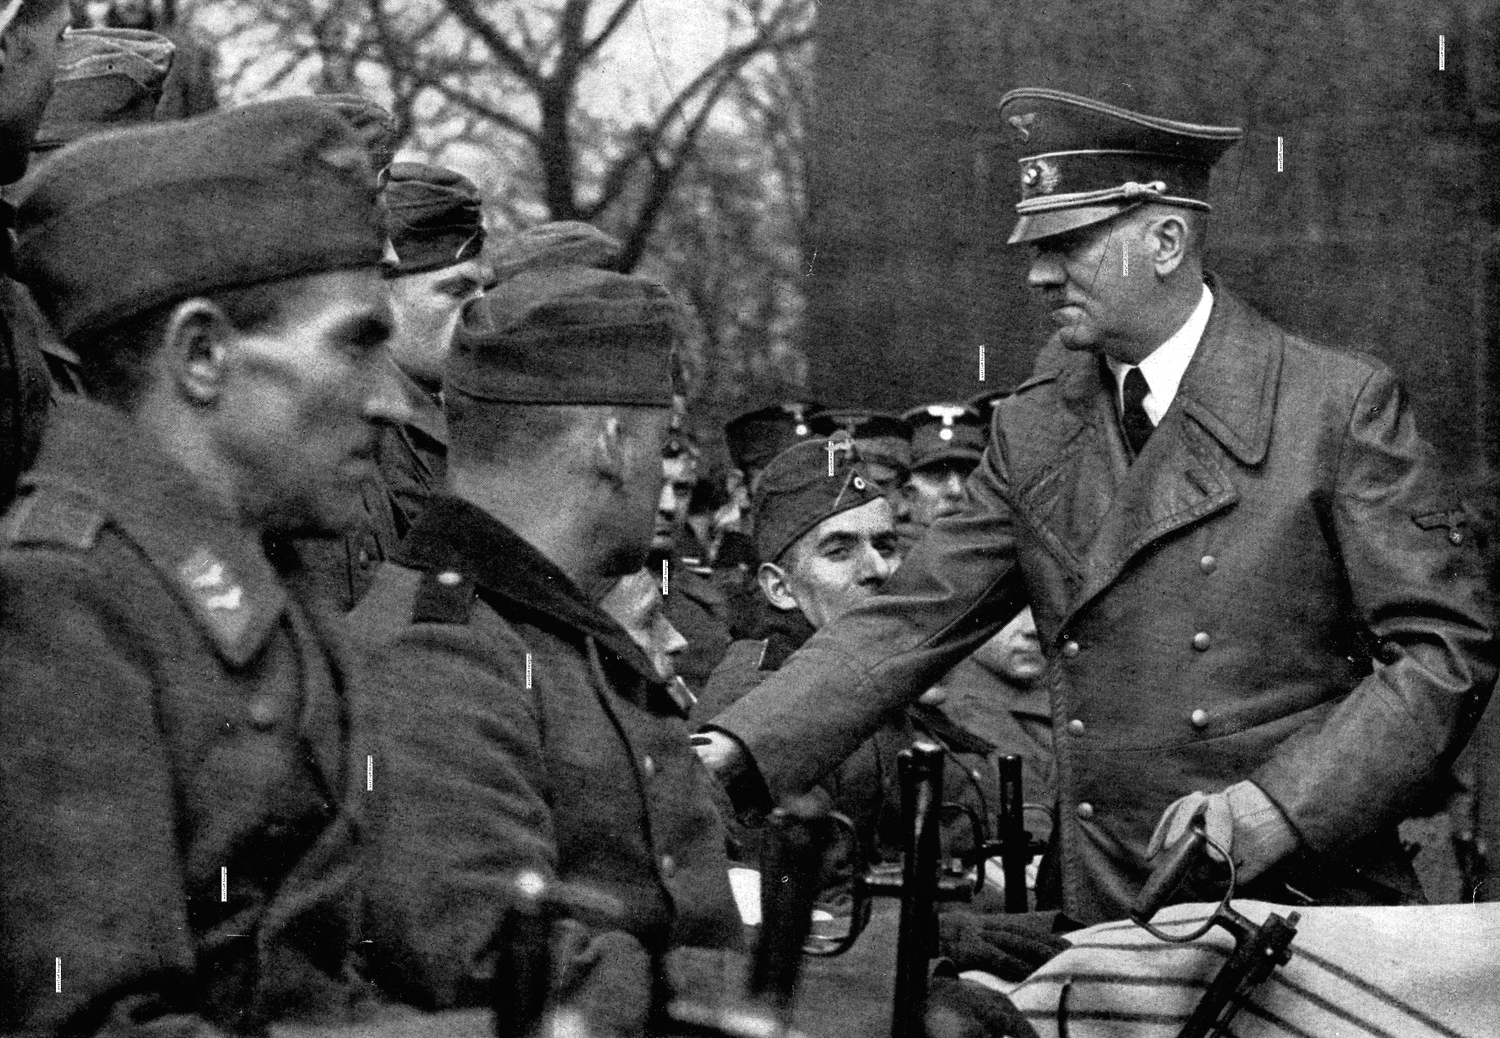 Hitler greeting disabled veterans